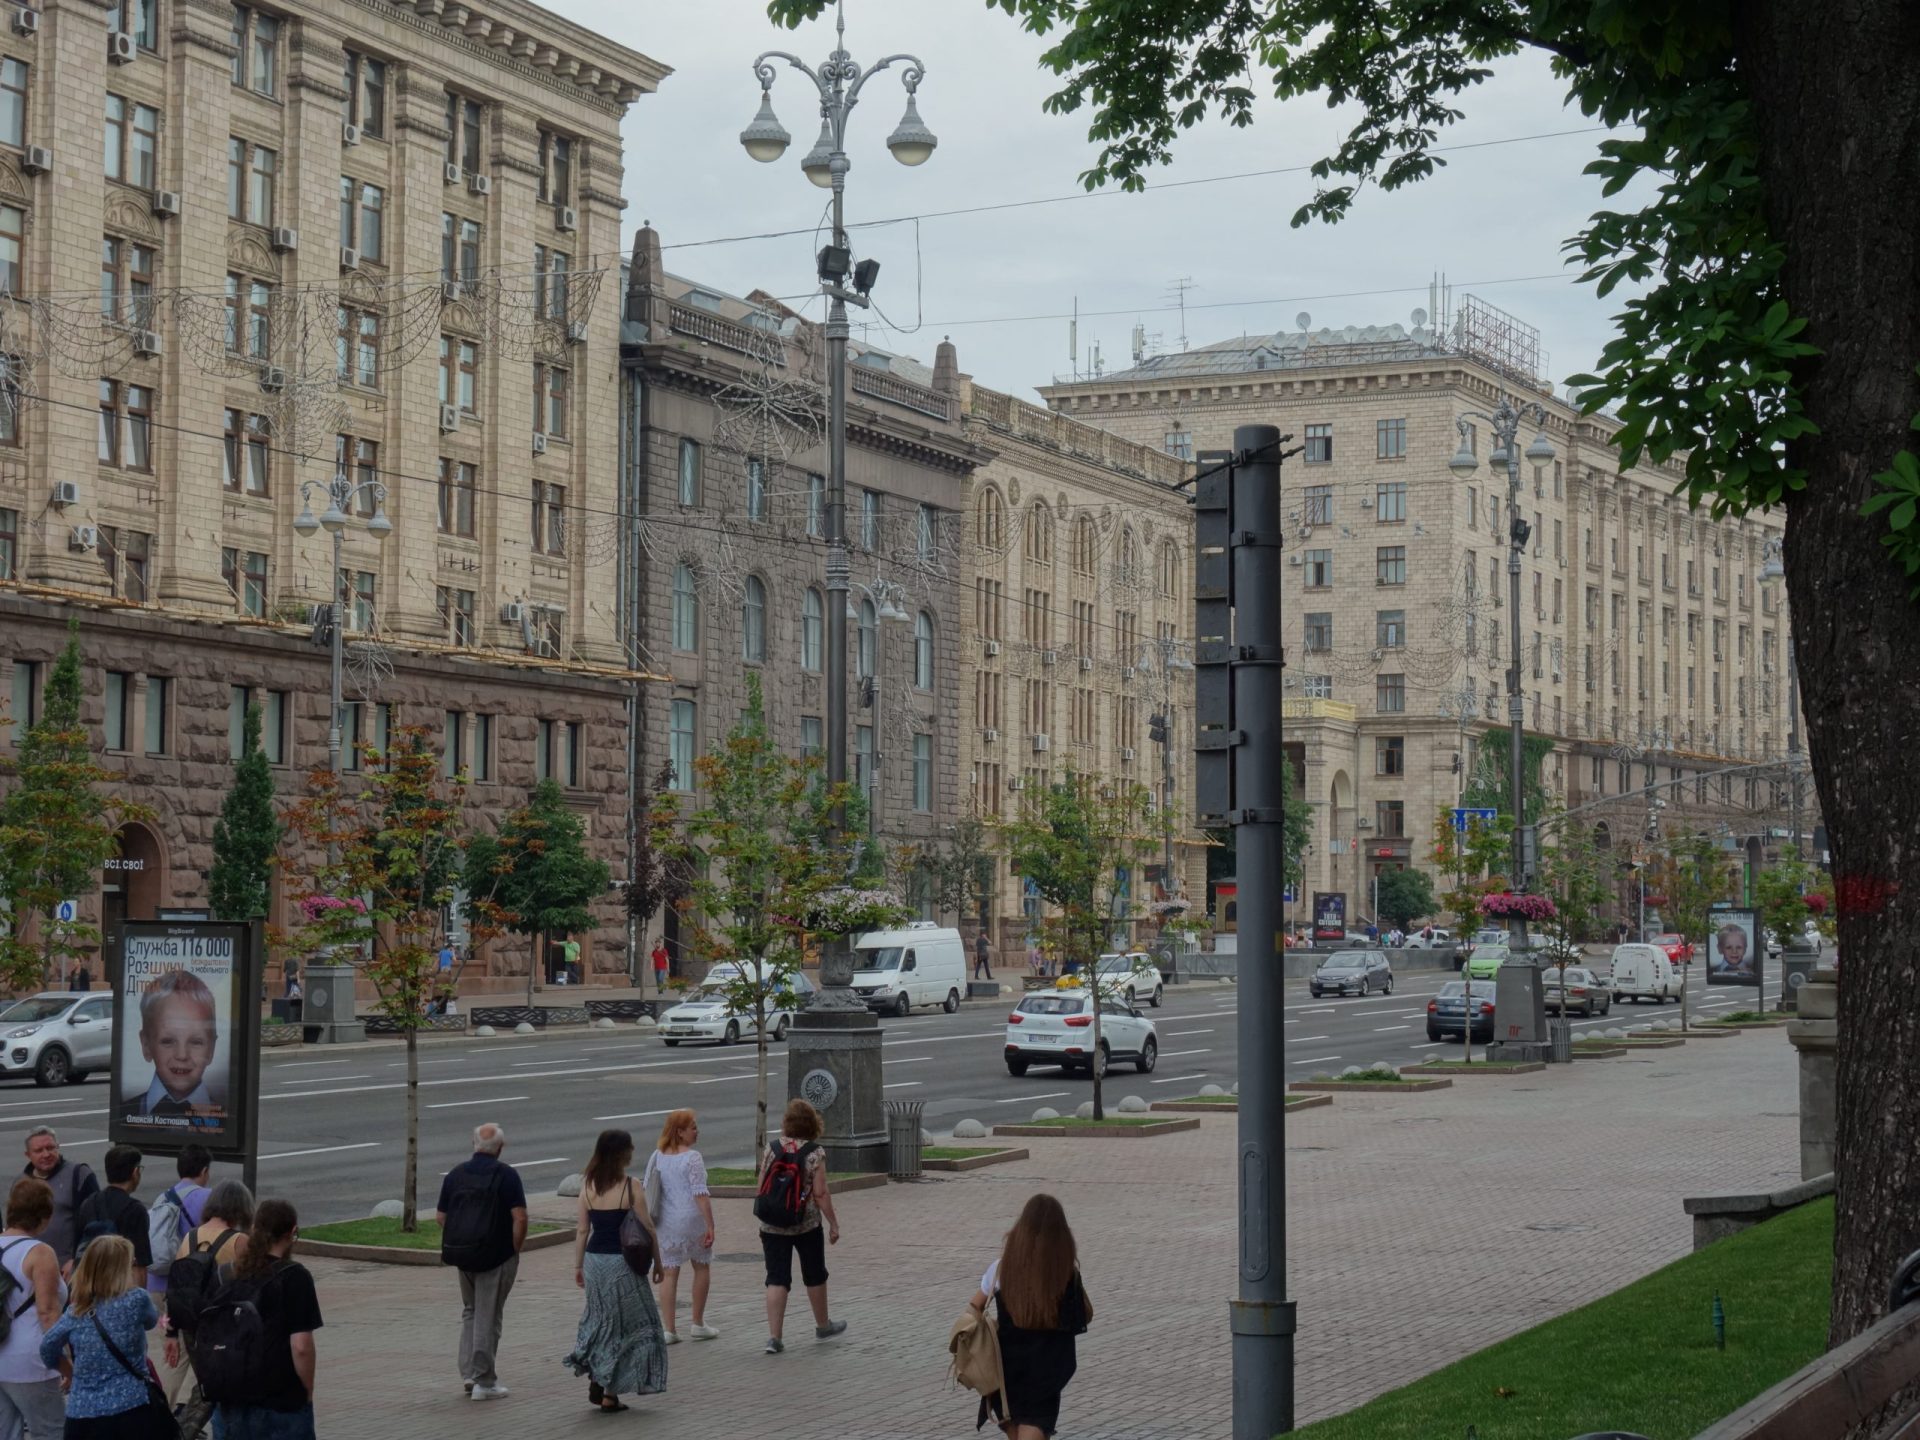 Kijów monumentalny – okolica Dworca, ulica Khreshchatyk i Plac Niepodległości – Miejski Wojażer